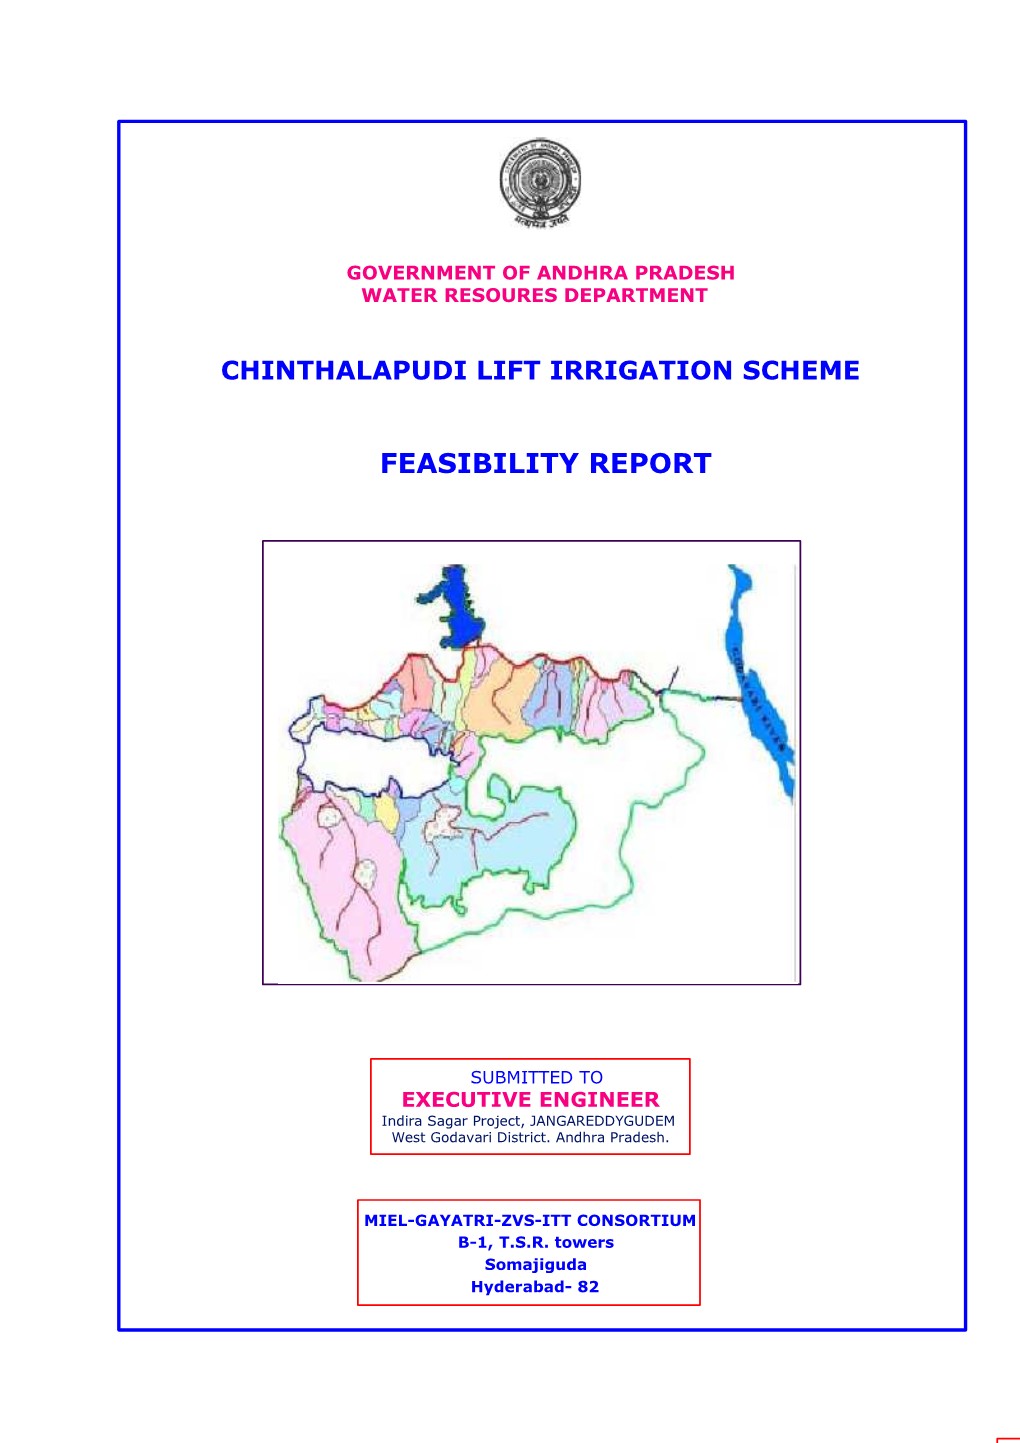 Chinthalapudi Lift Irrigation Scheme Feasibility Report